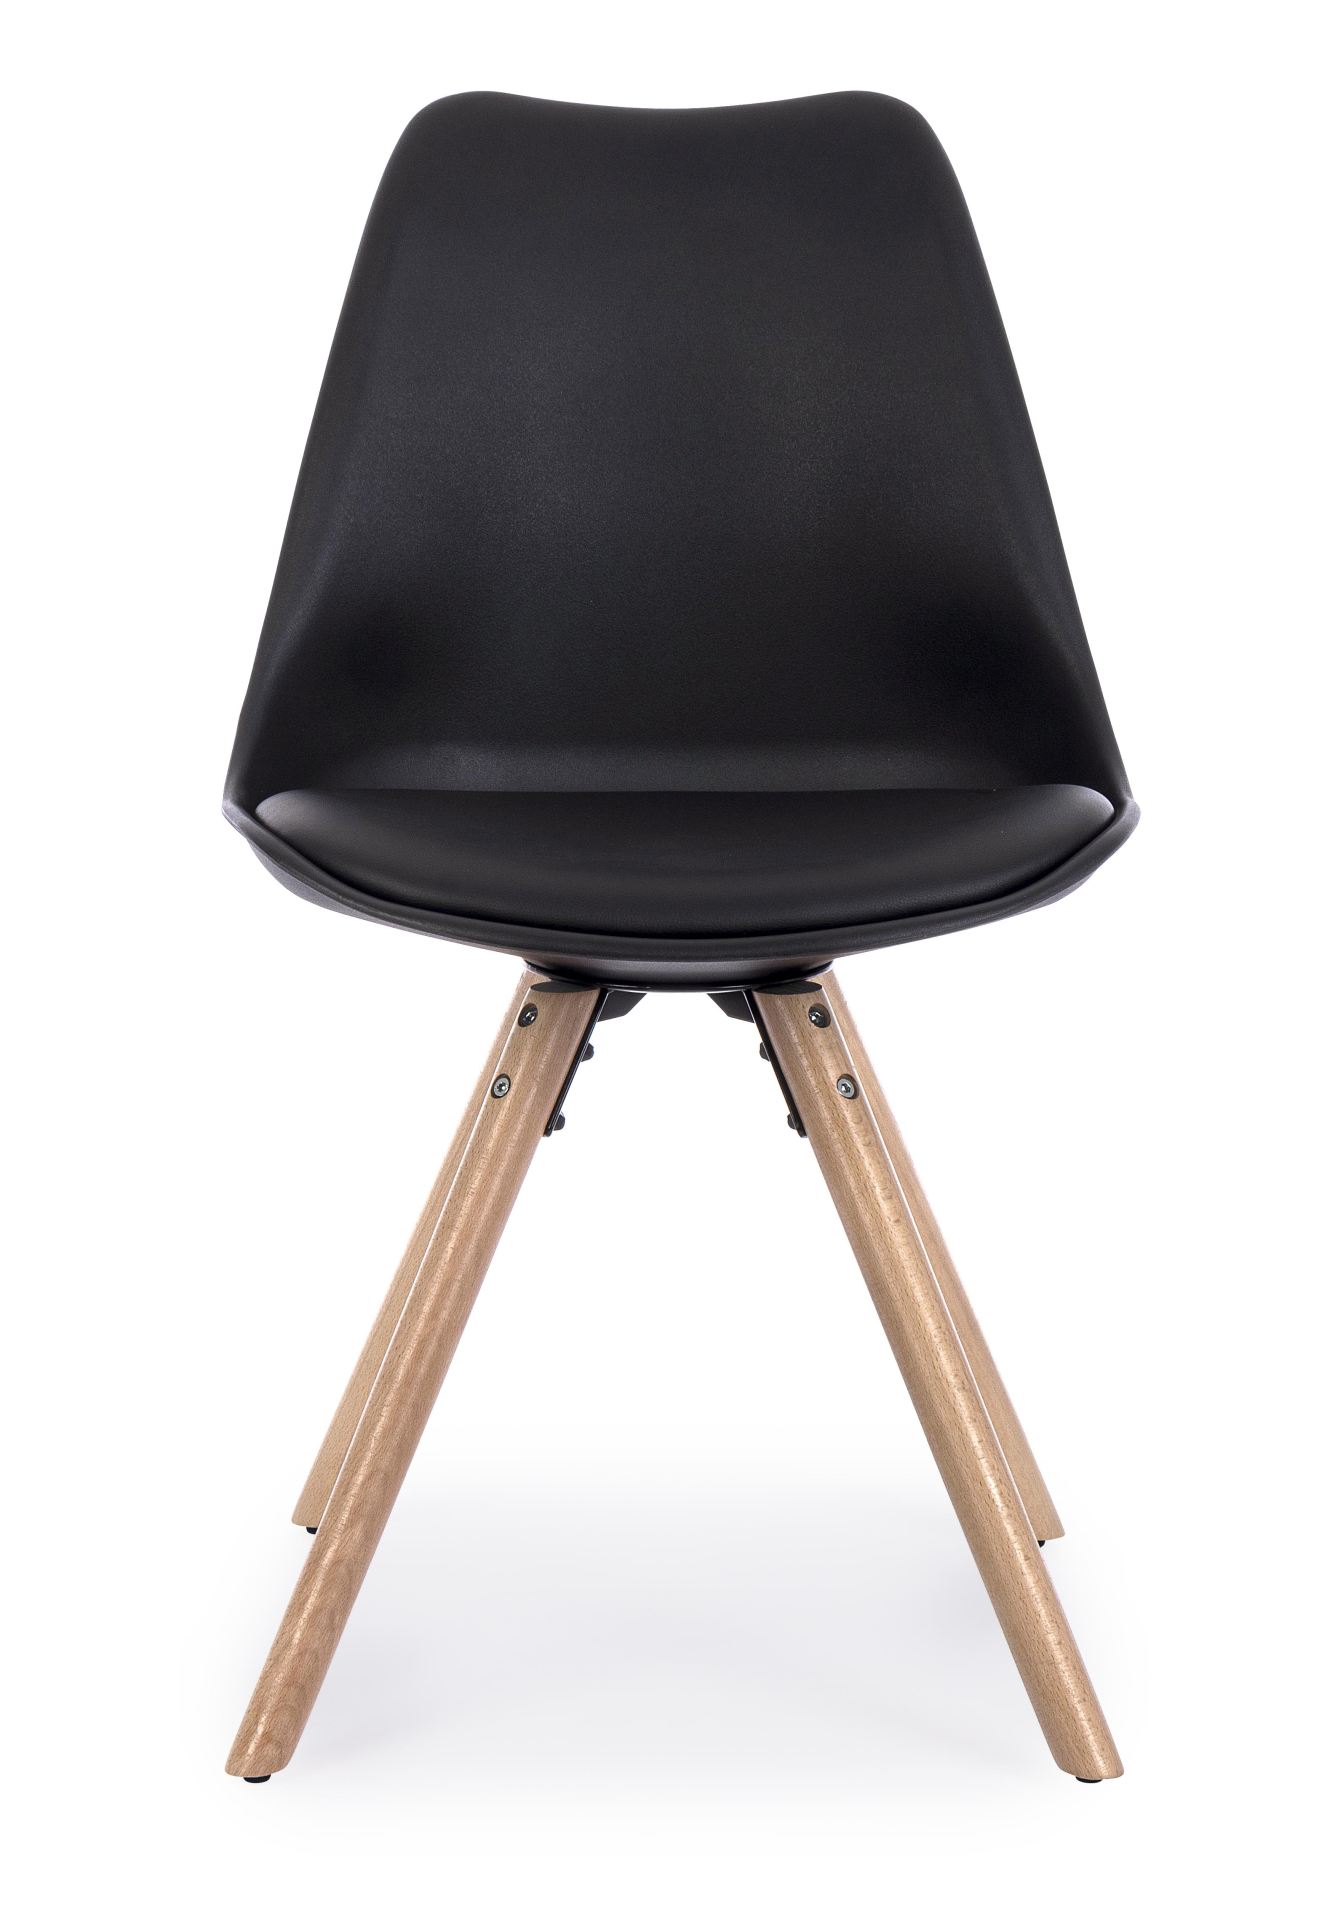 Der Stuhl New Trend überzeugt mit seinem modernem Design. Gefertigt wurde der Stuhl aus Kunststoff, welcher einen schwarzen Farbton besitzt. Das Gestell ist aus Buchenholz. Die Sitzhöhe des Stuhls ist 49 cm